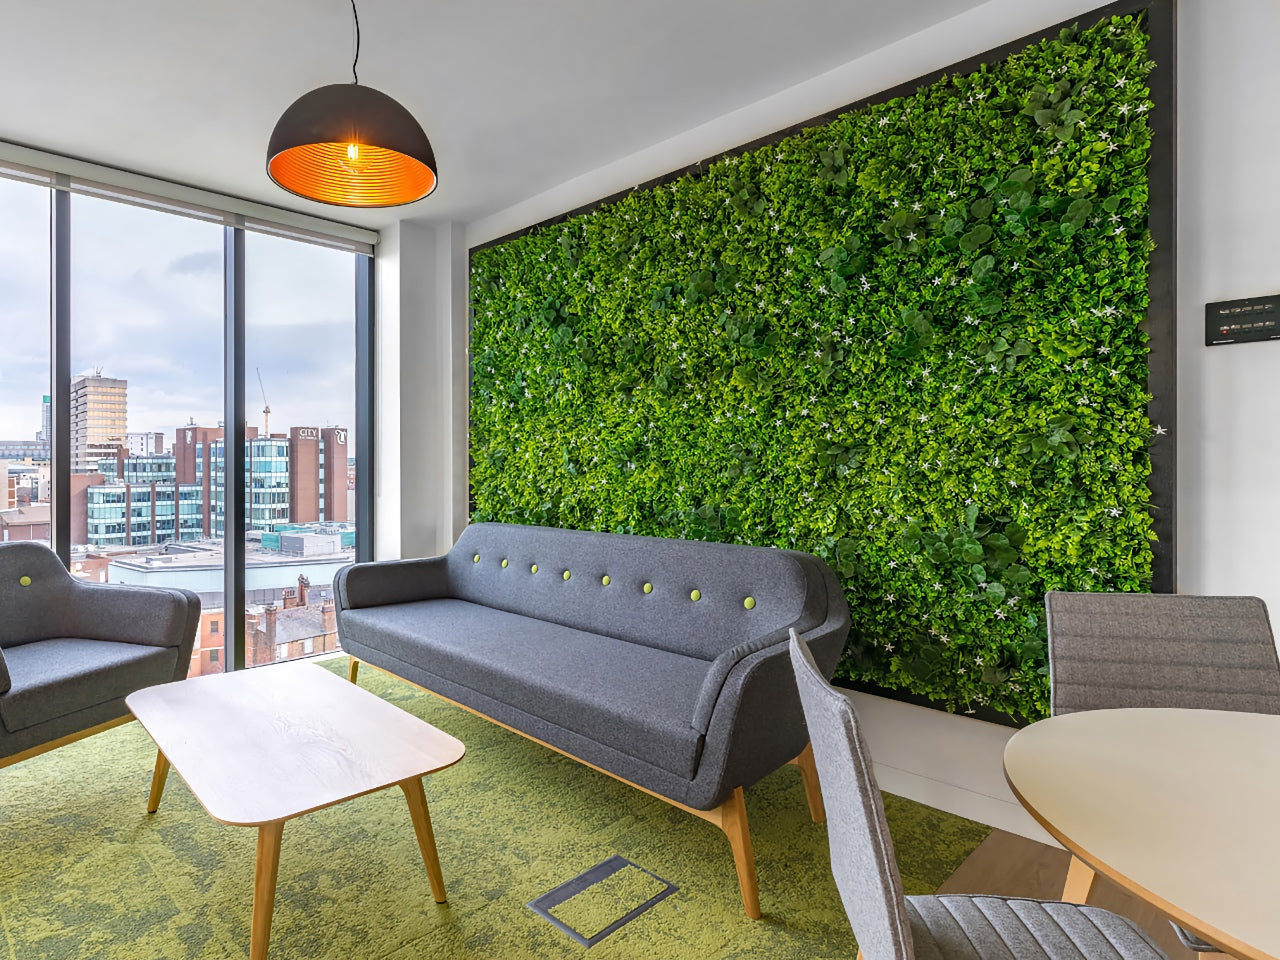 Artificial green walls, faux walls, artificial plant panels and mats